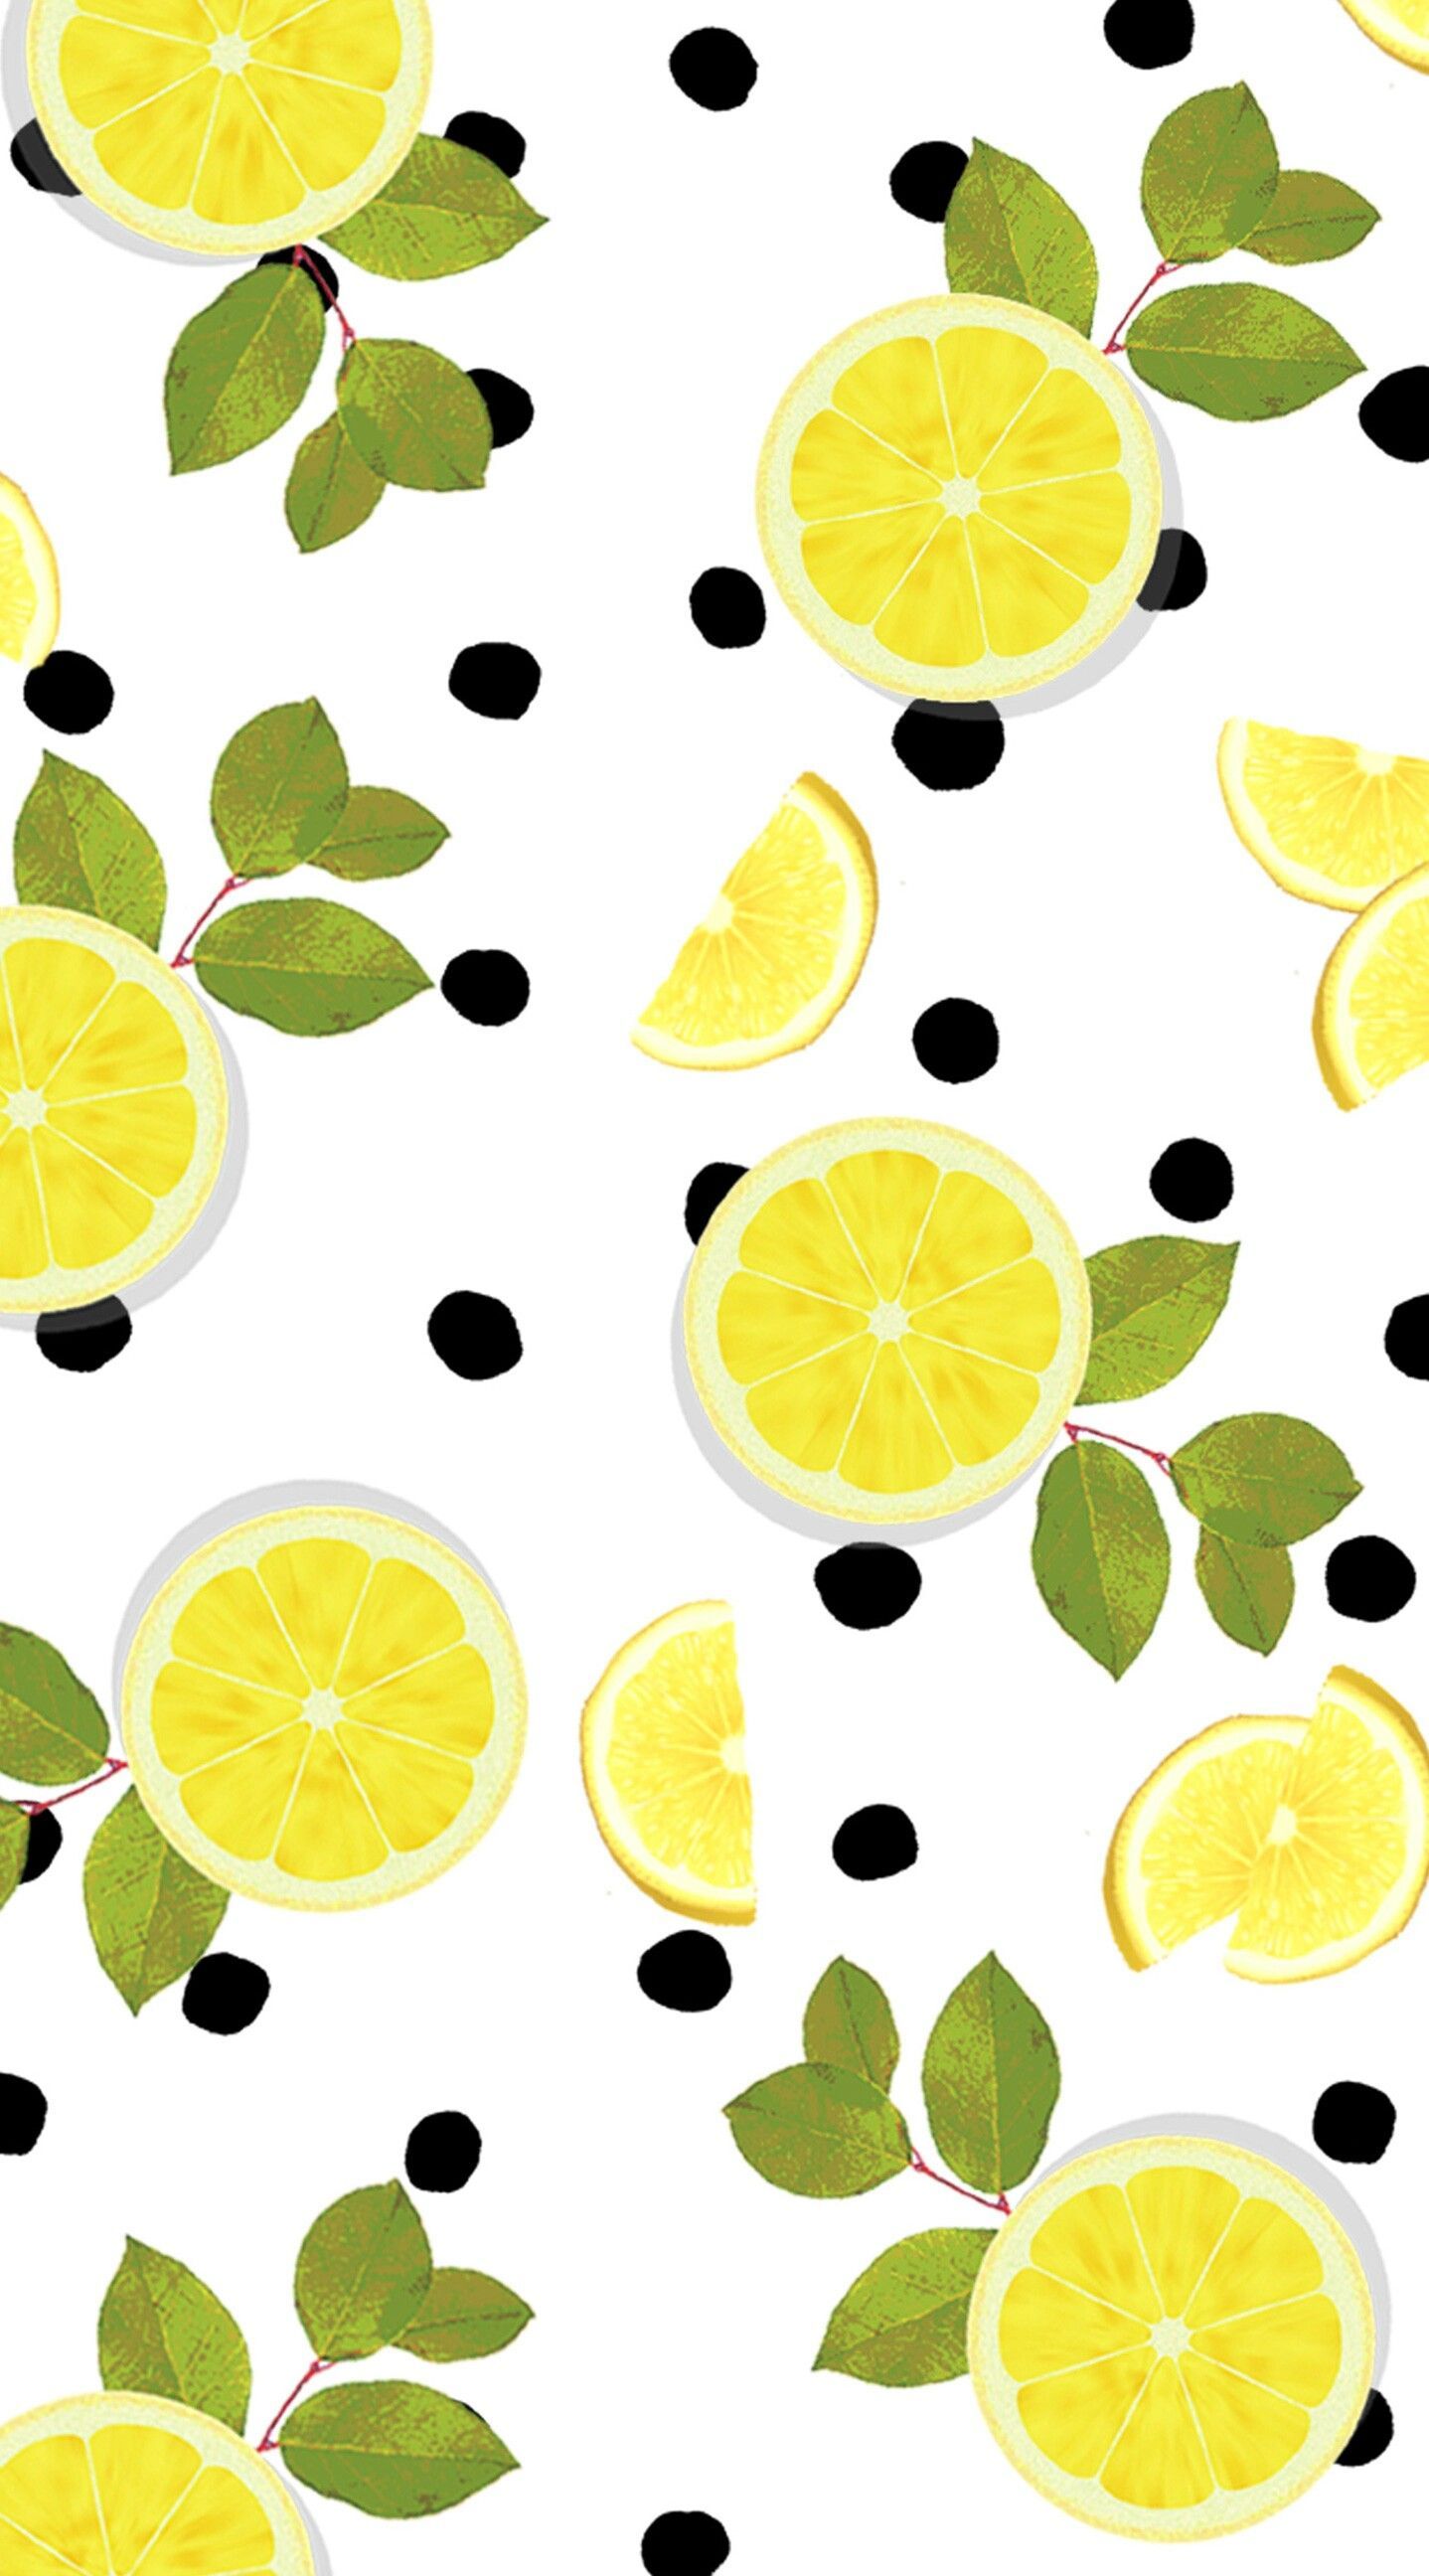 والپیپر قشنگ از لیمو های طلایی با برگ های سبز لجنی